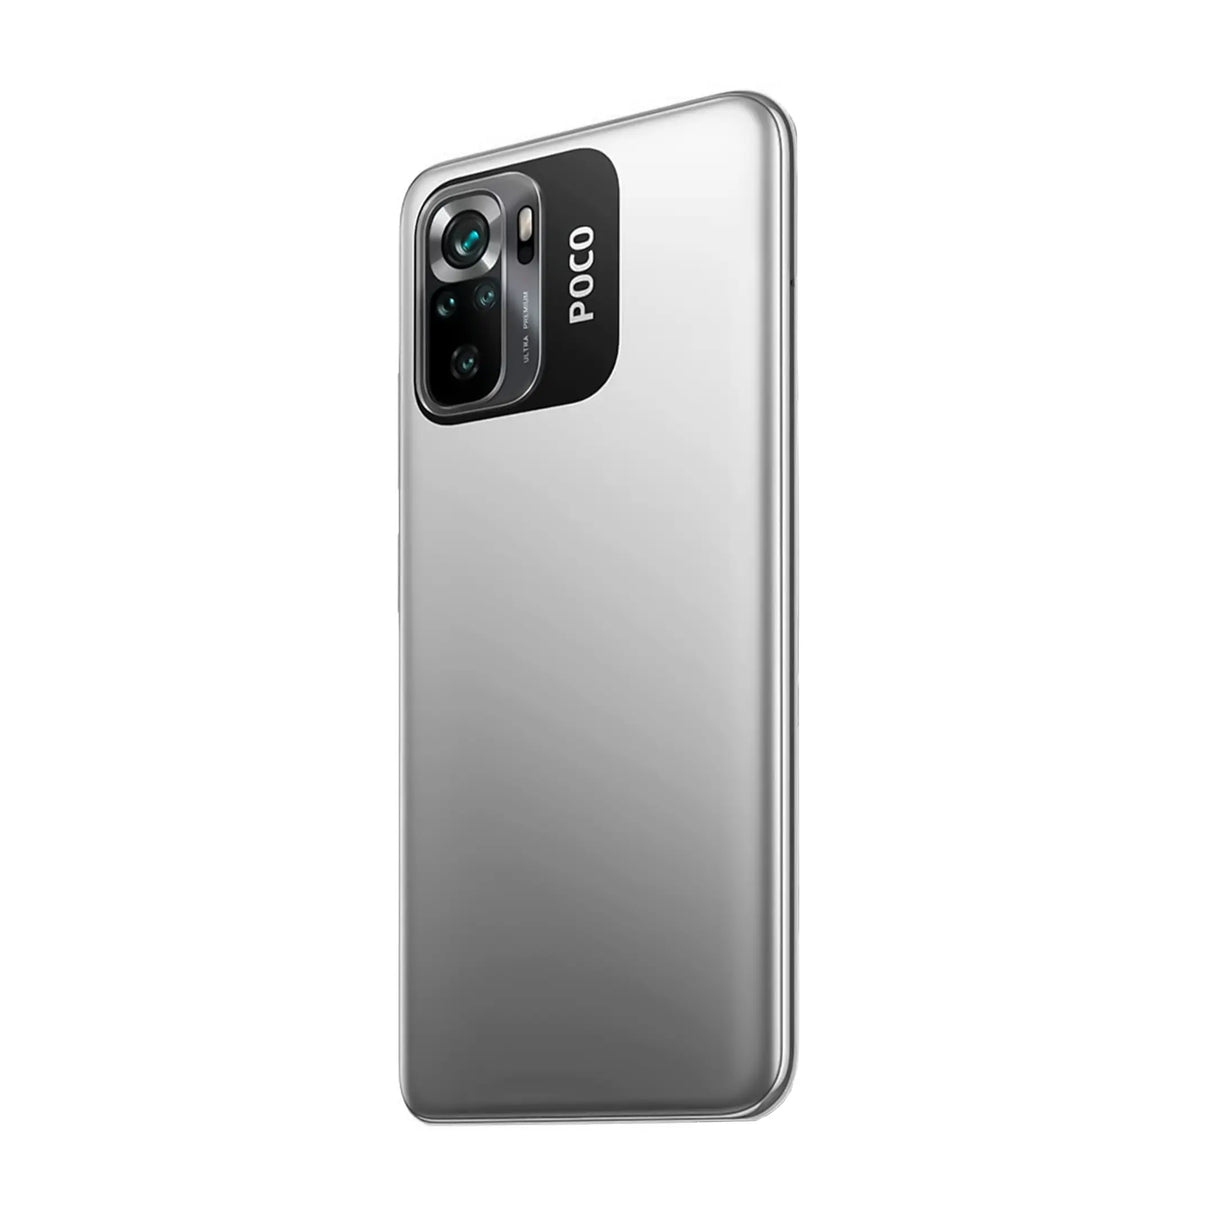 Xiaomi Poco M5s 6/128GB (Gray)